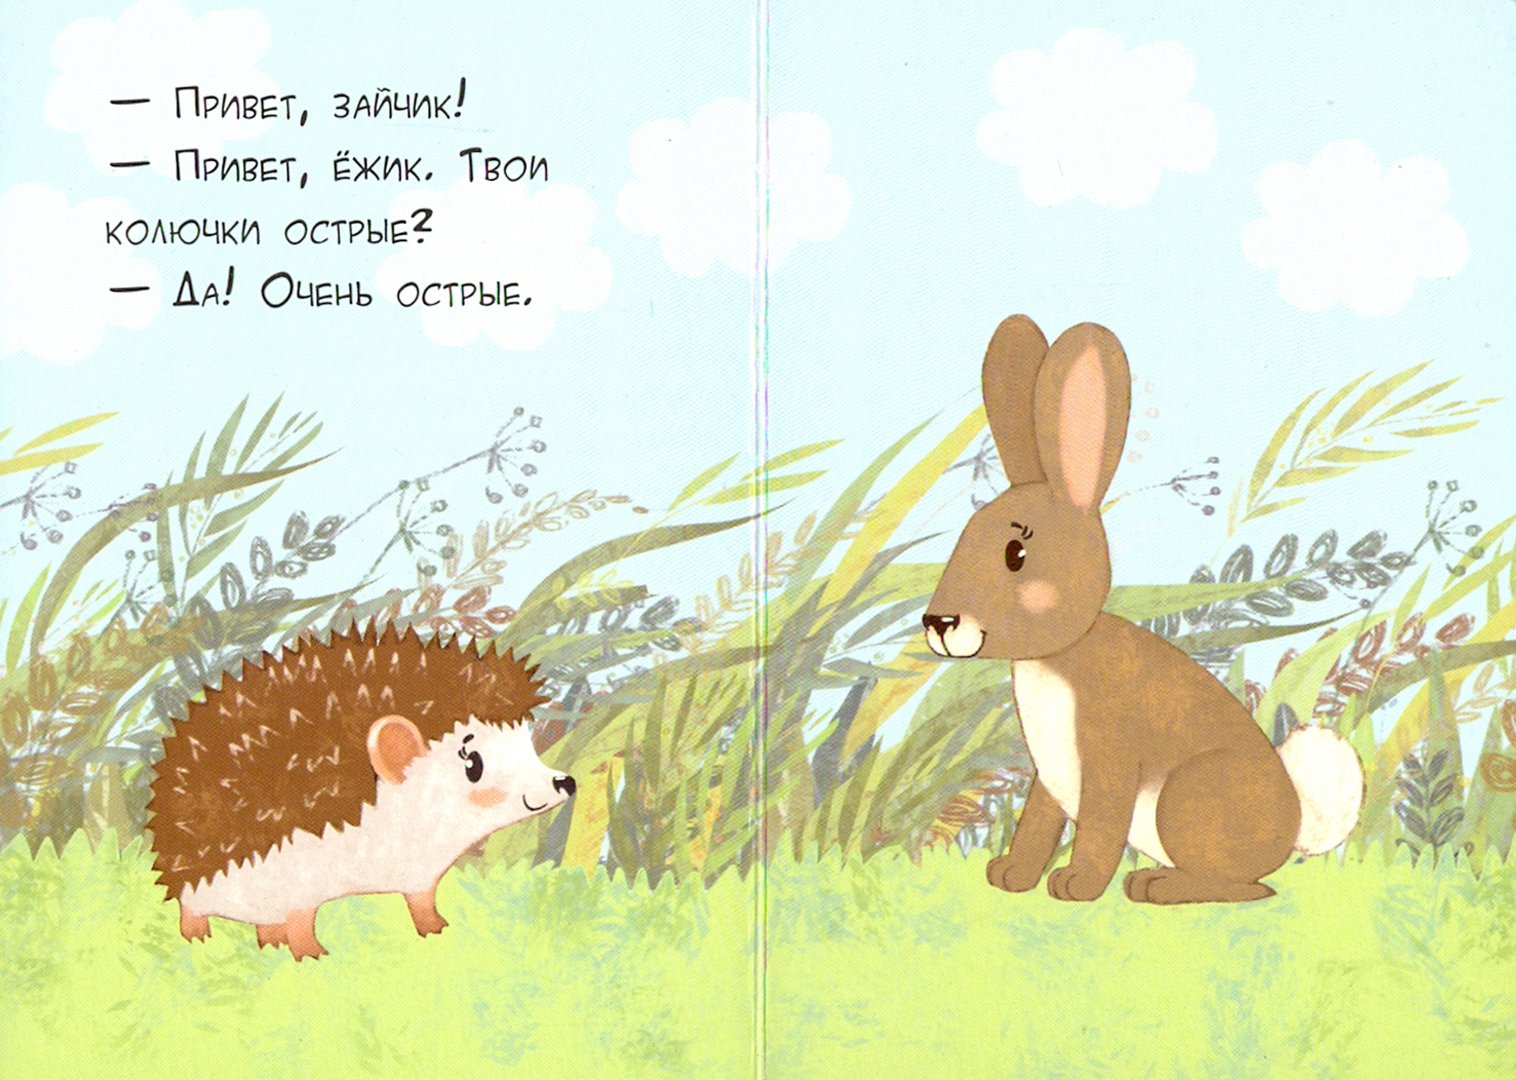 Как говорят зайчики. Зайчик и Ёжик. Заяц обнимает ежика. Диалог зайчика и ежика. Заяц и еж рисунок.